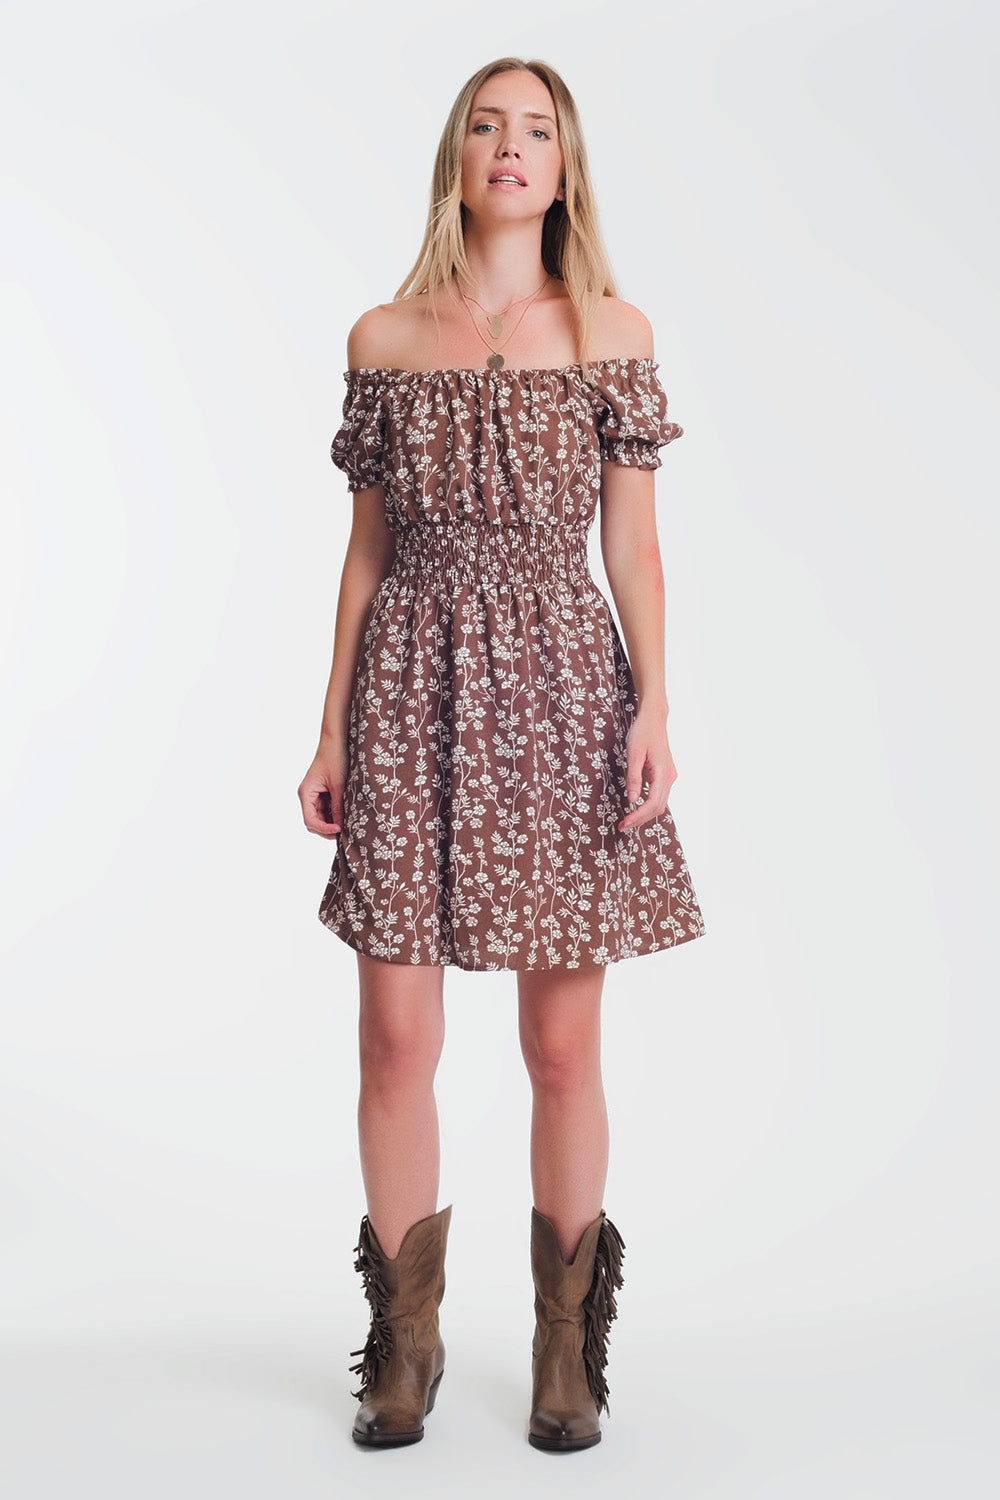 Brown mini bardot dress in floral print Szua Store